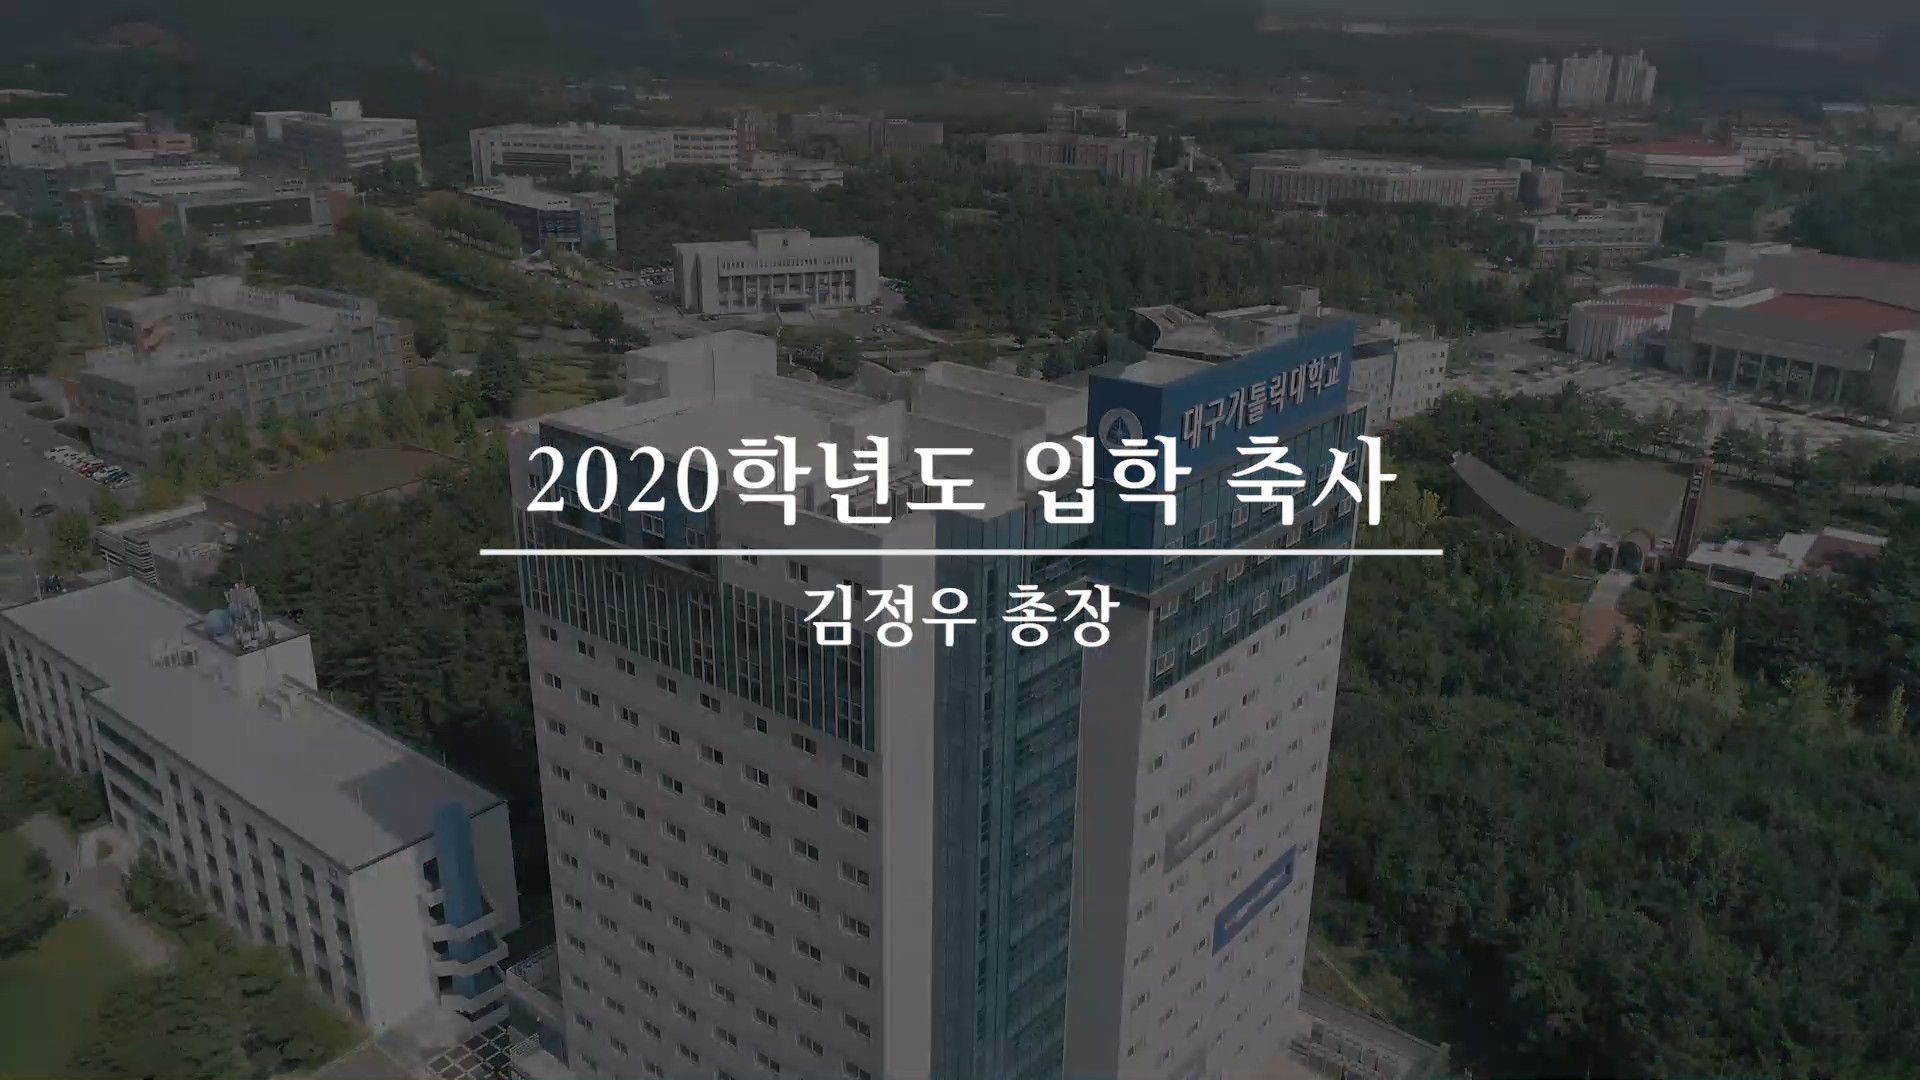 2020학년도 입학 축사 김정우 총장